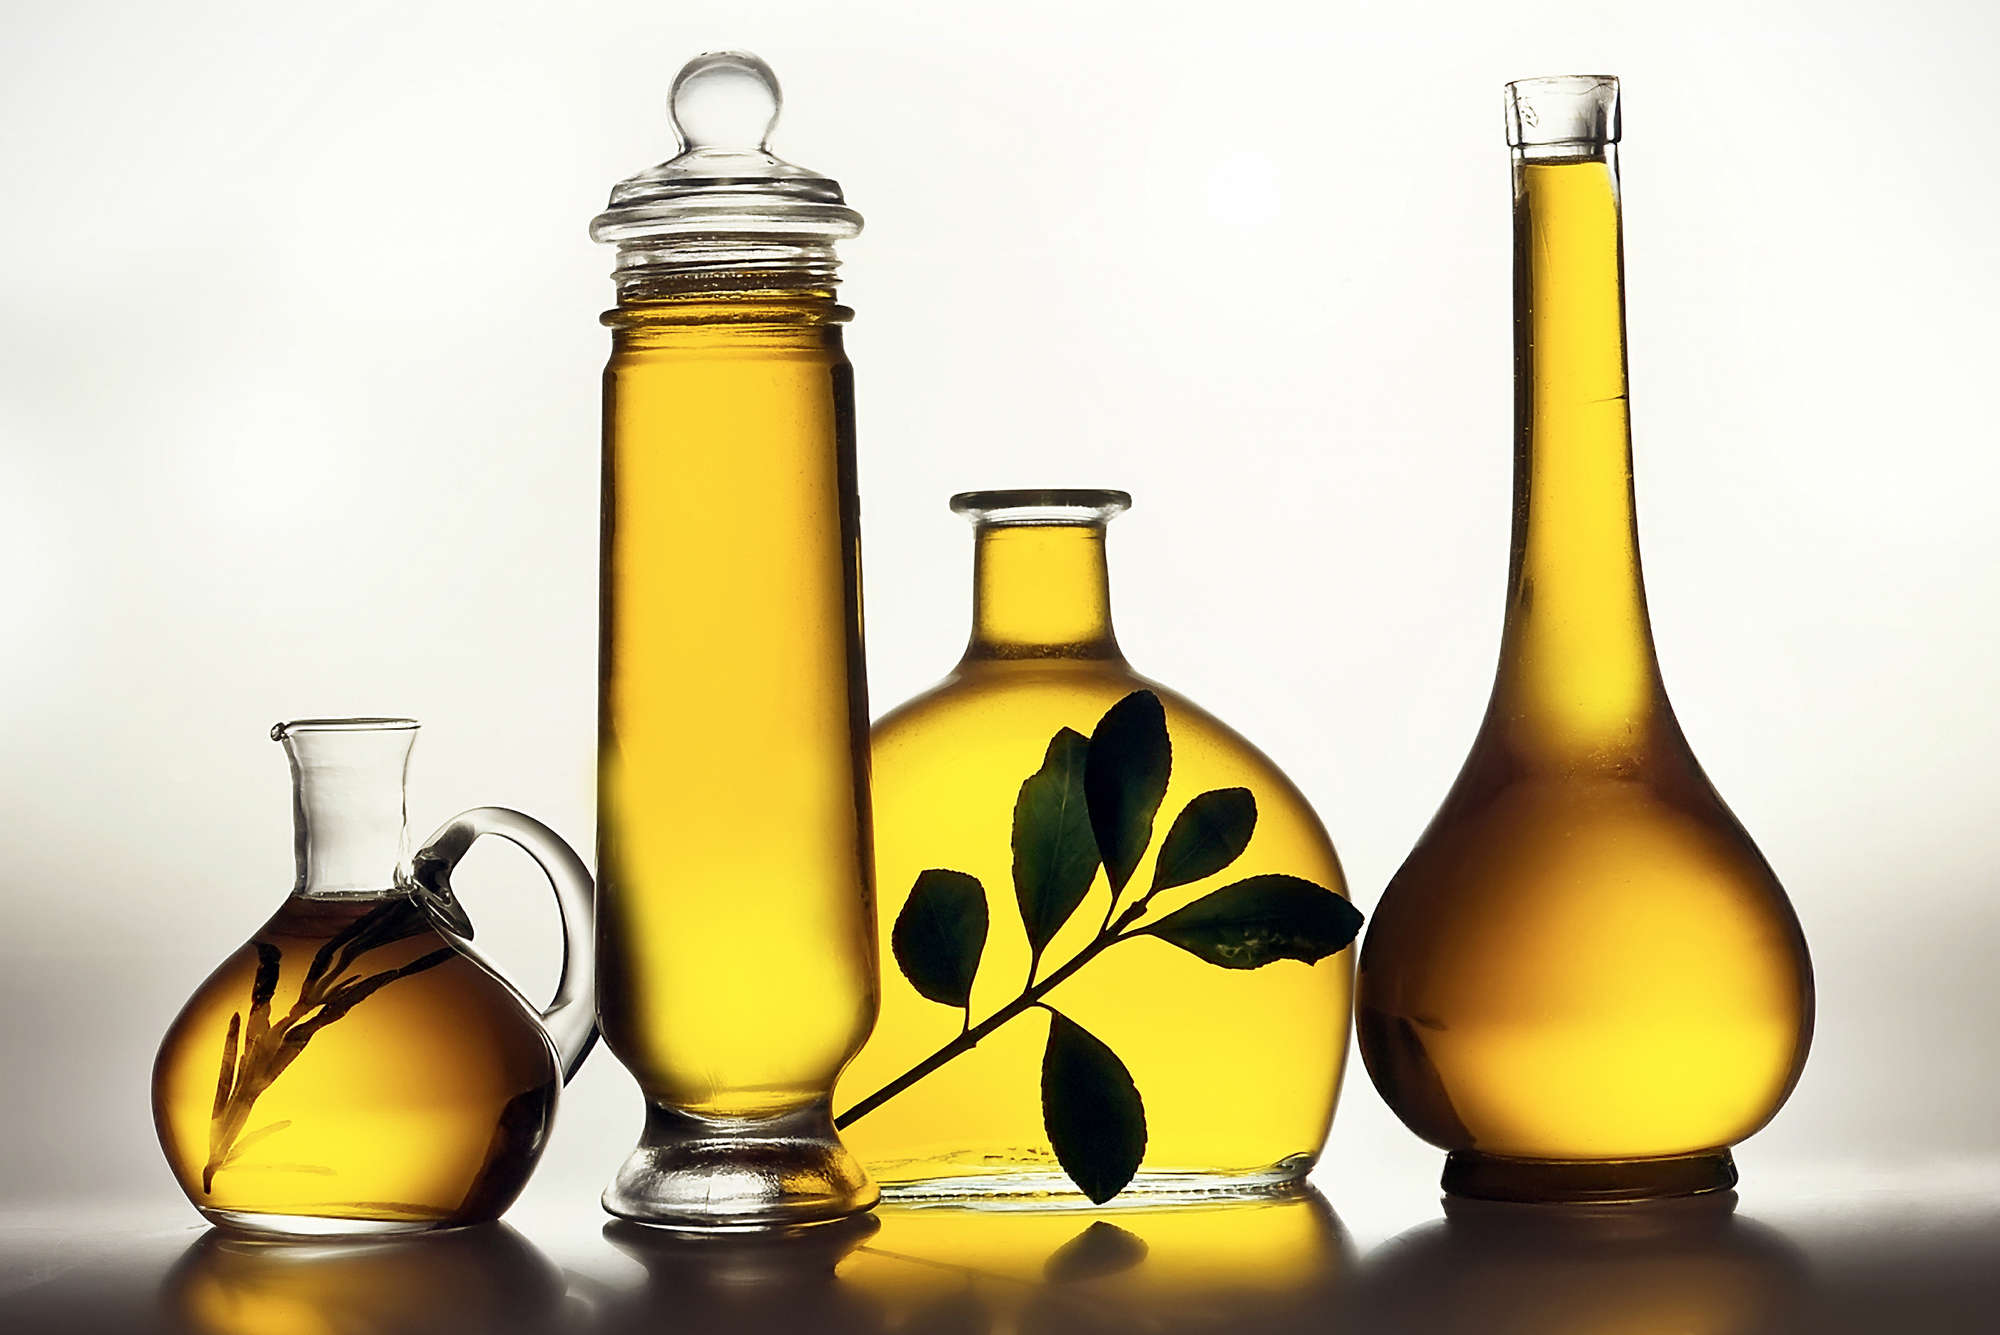             Fotomural Botellas con aceite de oliva - tejido no tejido liso de alta calidad
        